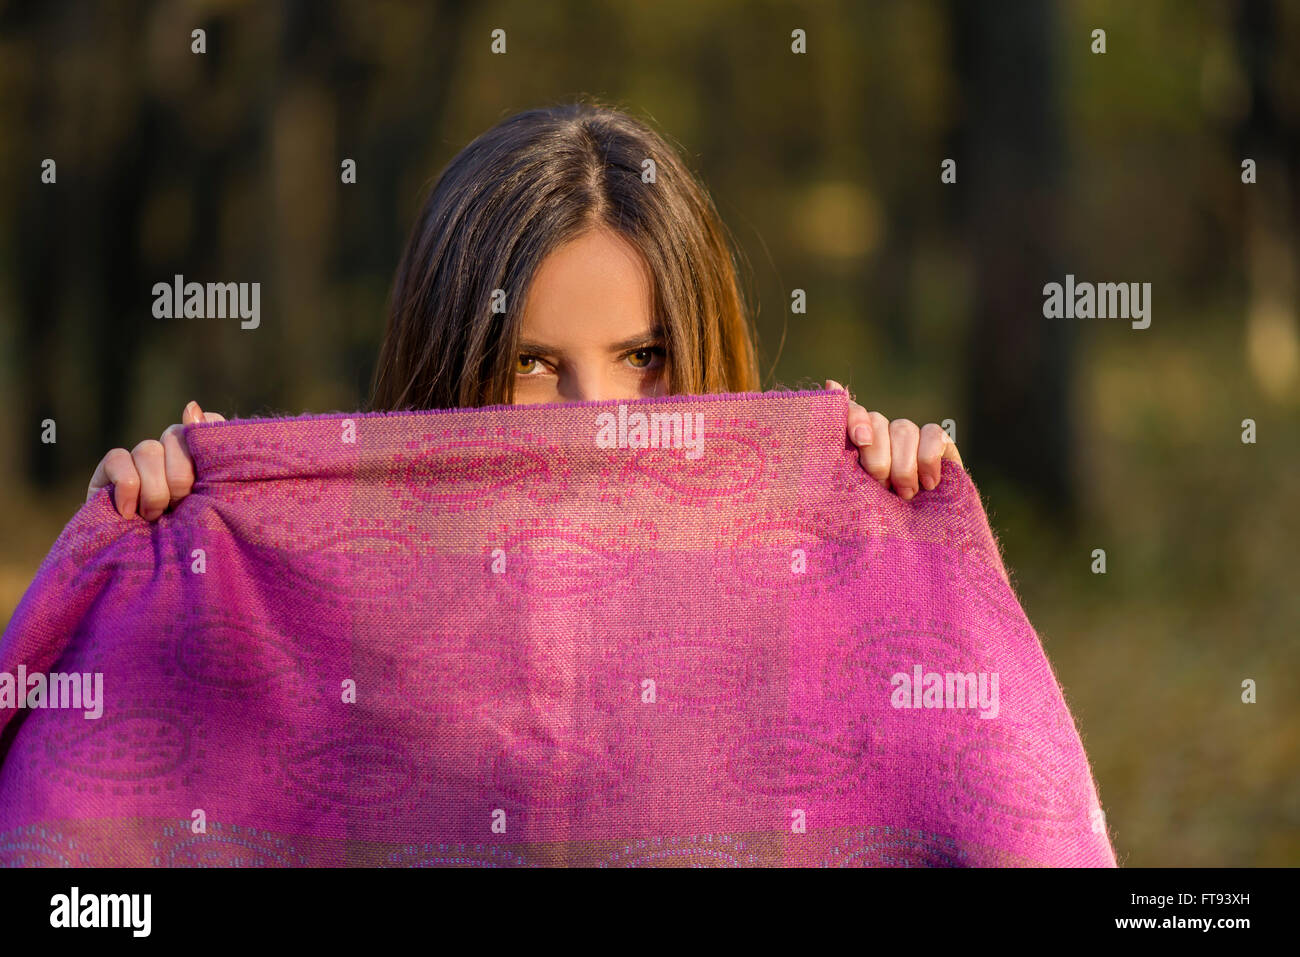 Derrière l'écharpe mauve. Jolie fille adolescente avec les yeux bruns est couvrant son visage avec l'écharpe pourpre dans l'après-midi bois. Banque D'Images